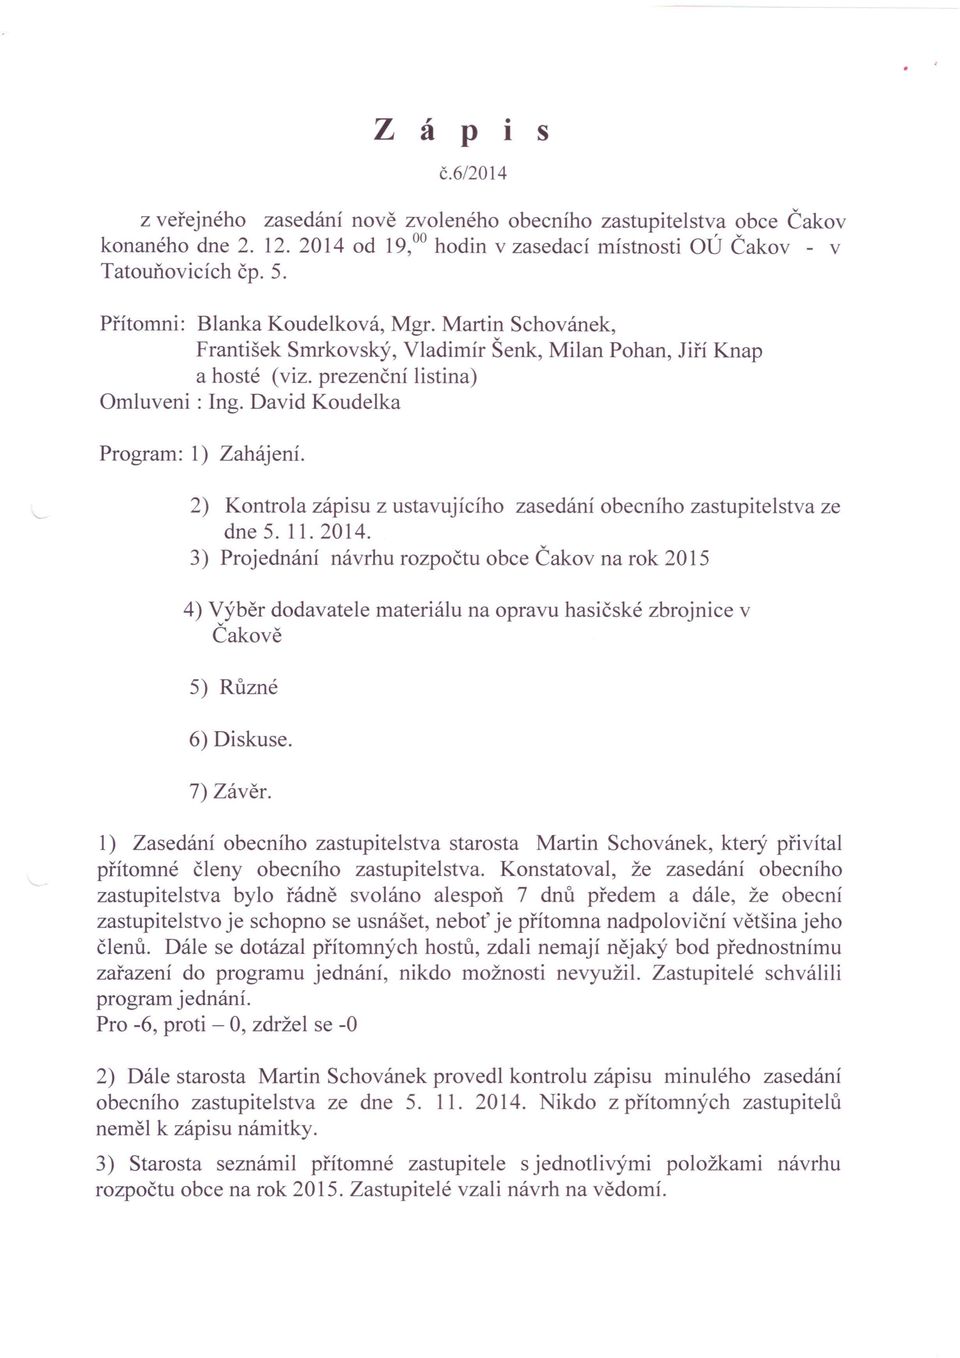 2) Kontrola zápisu z ustavujícího zasedání obecního zastupitelstva ze dne 5. 11. 2014.